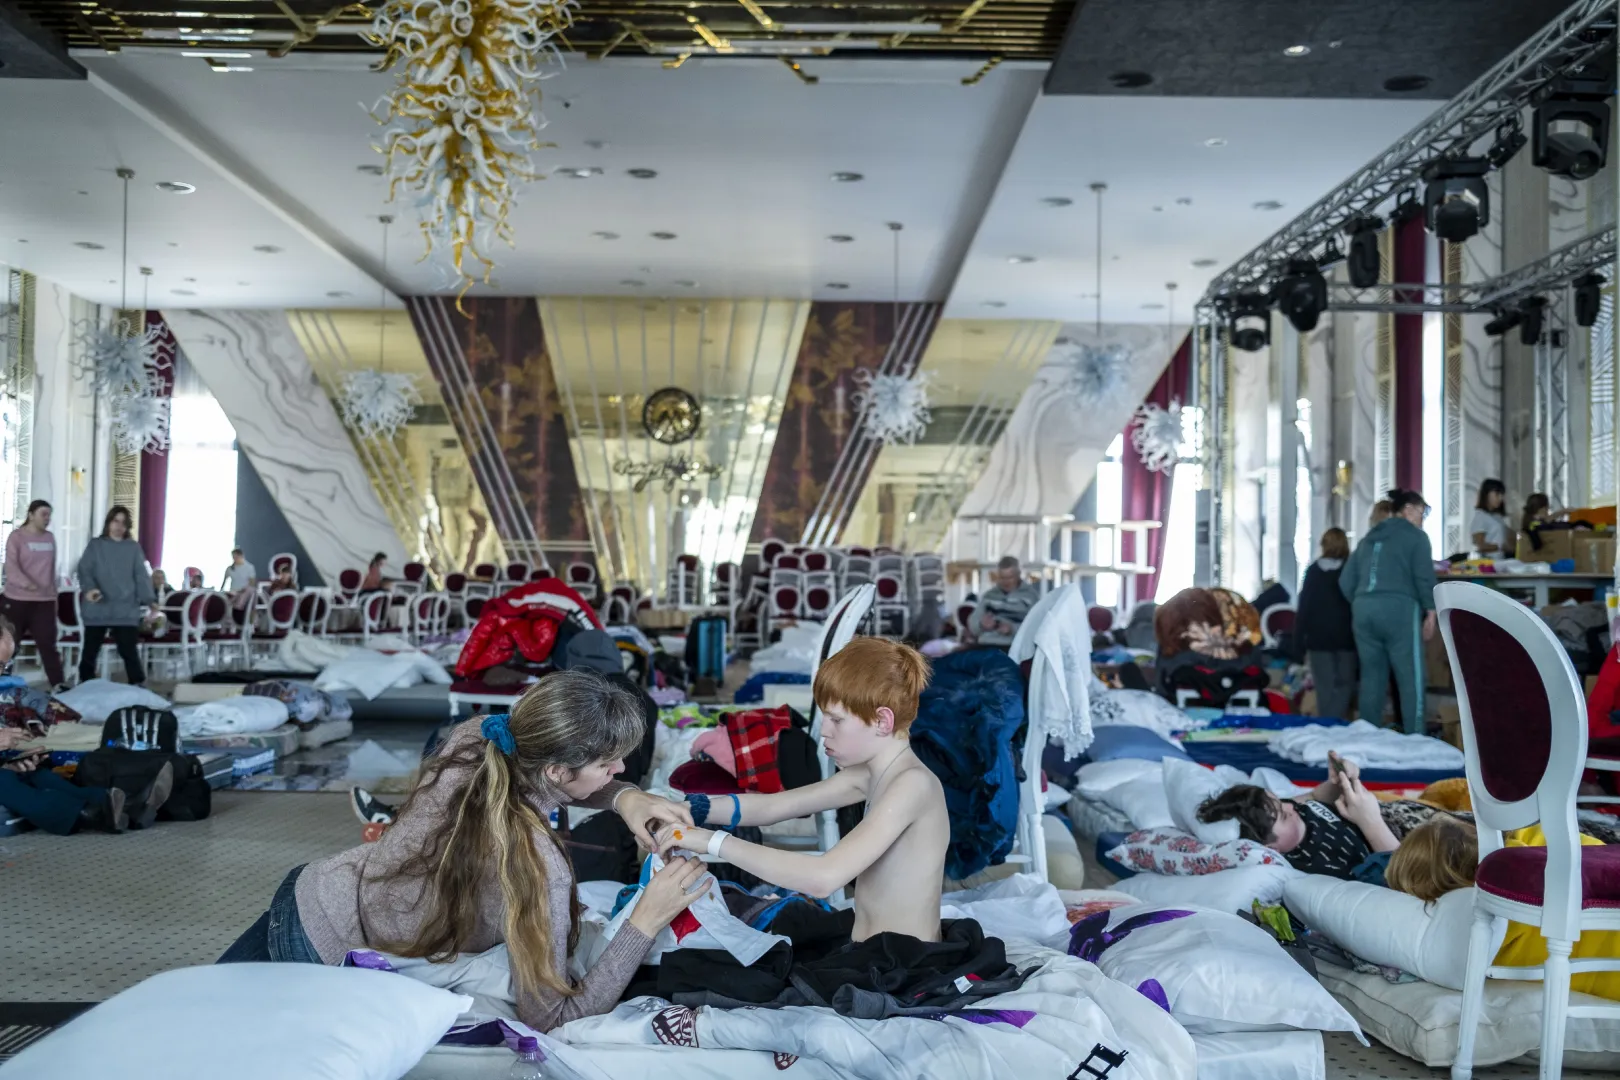 Ukrán menekültek Ștefan Mandachi suceava-i luxushotelének báltermében, ahol ideiglenes szállást biztosítottak számukra 2022. márciusában. A hotel az ukrán-román határtól körülbelül 30 percre található – Fotó: UCG / Getty Images